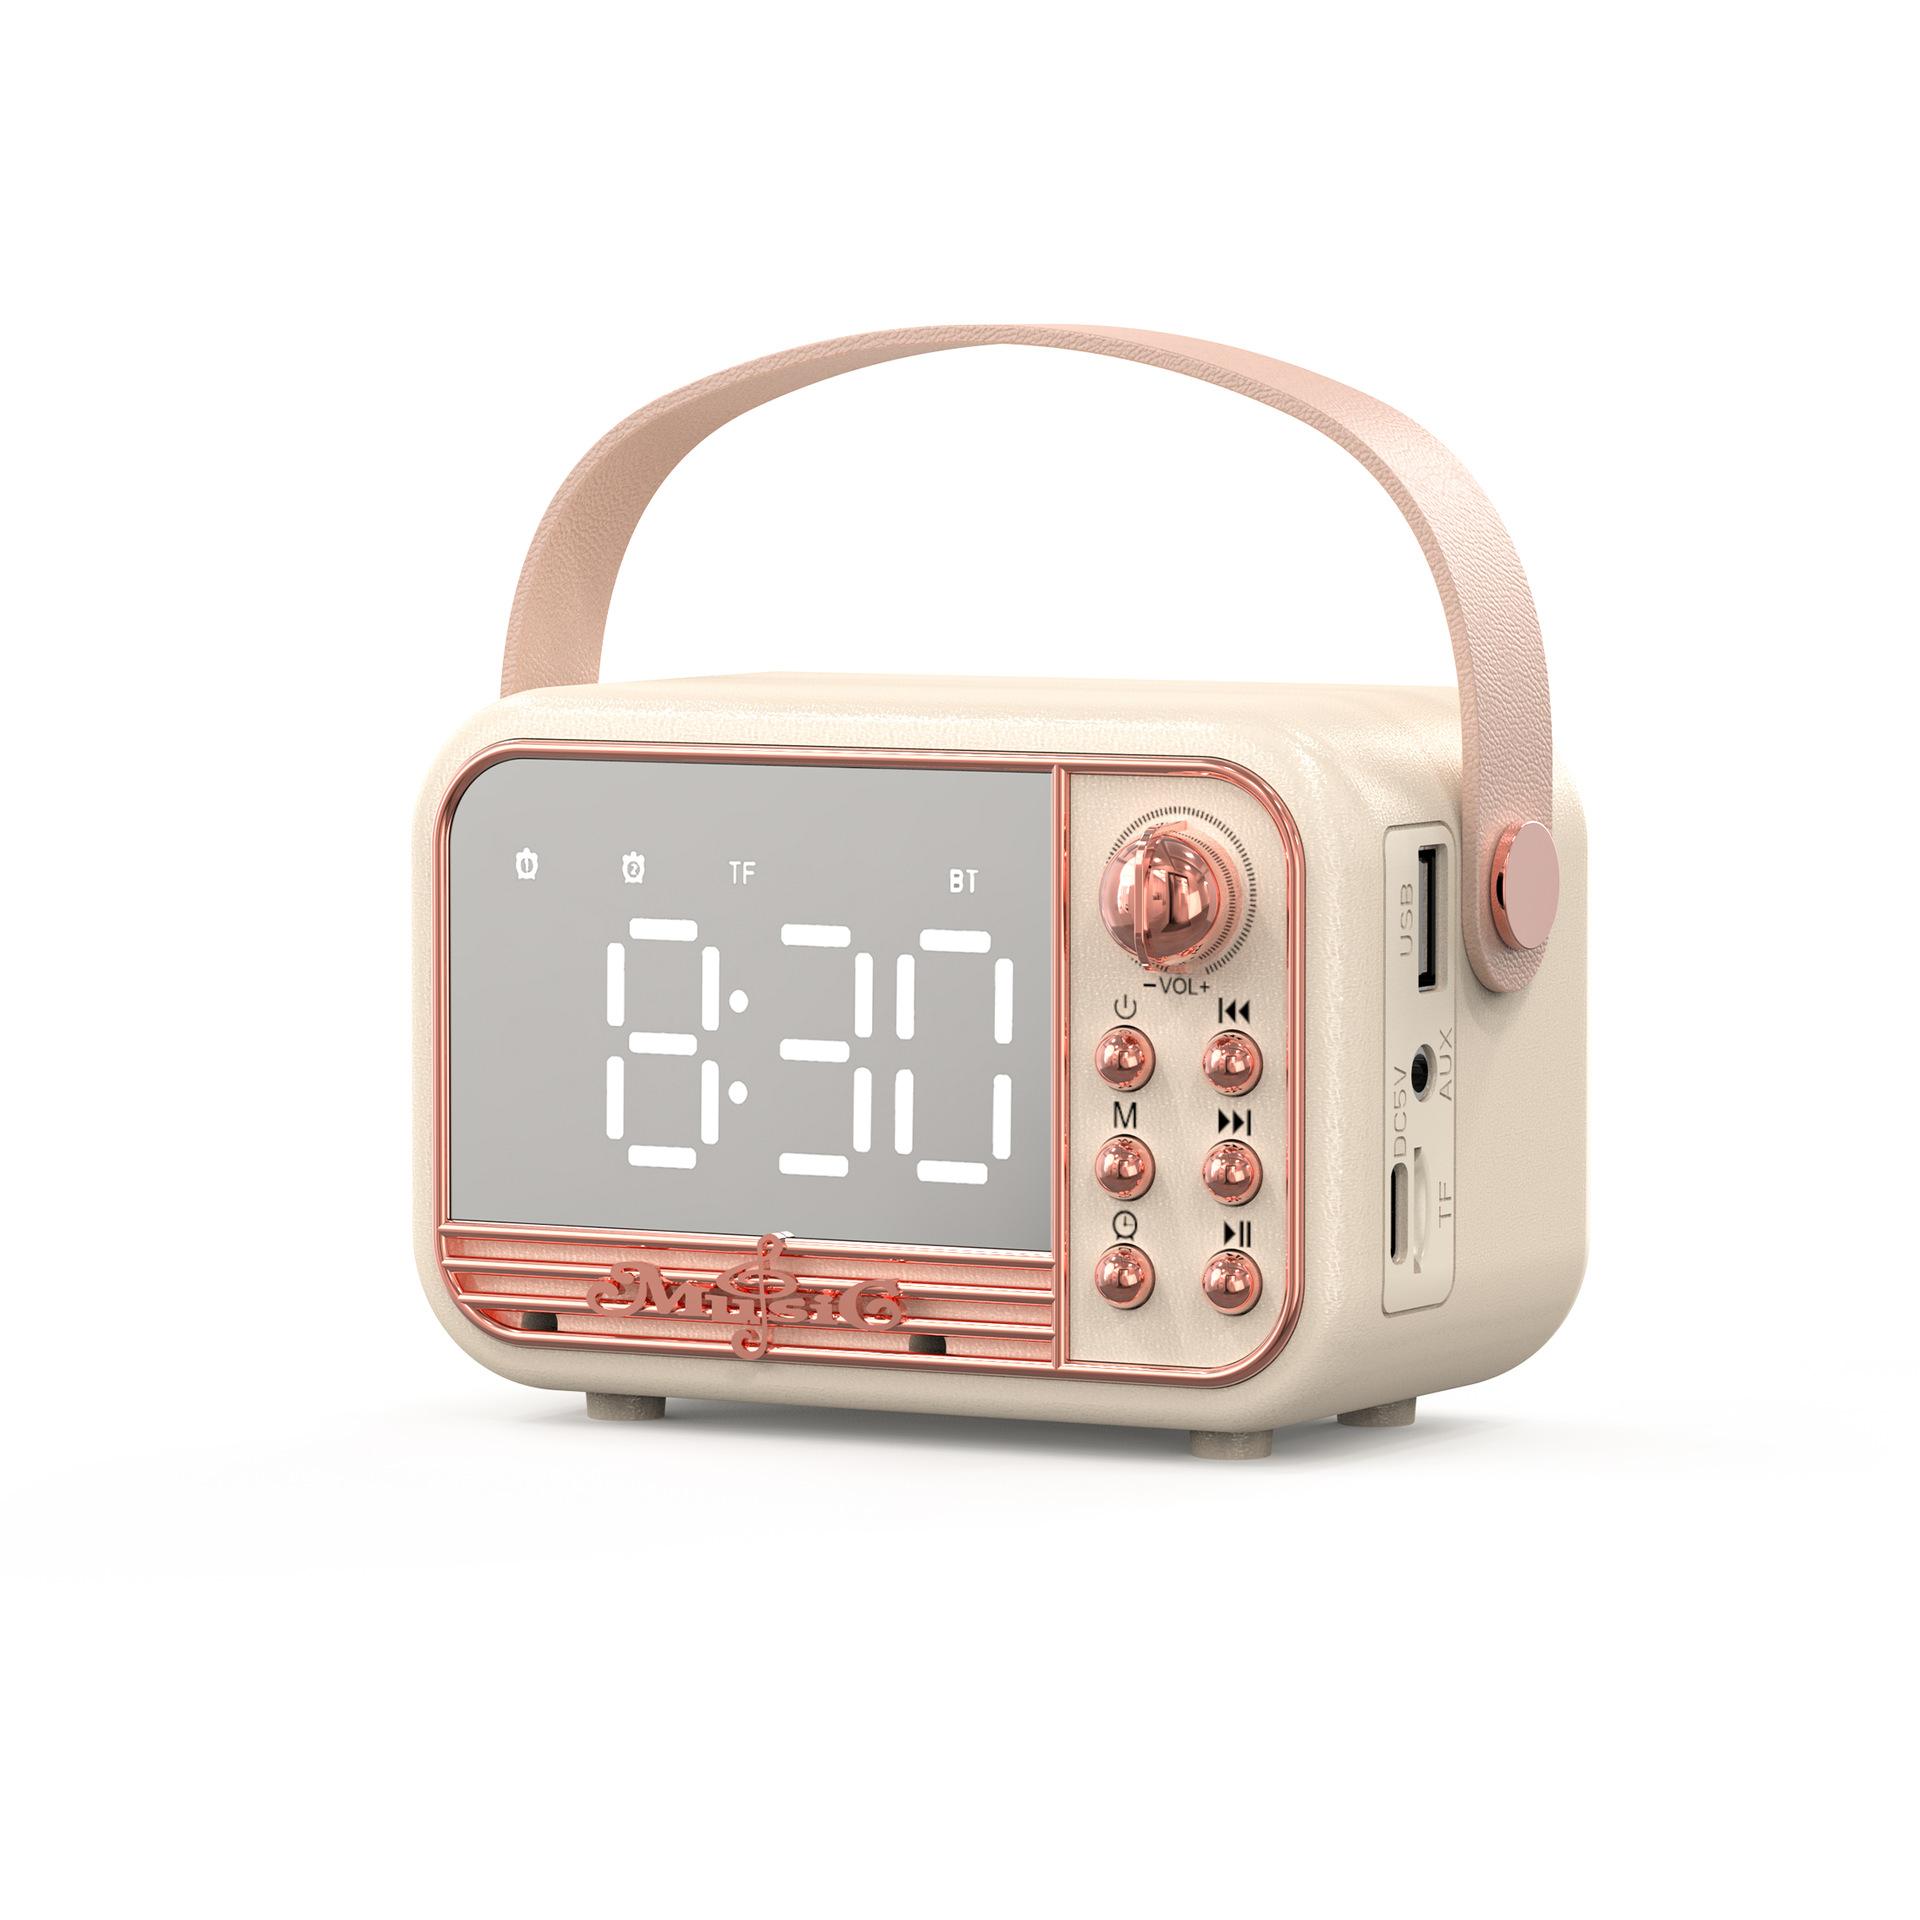 Loa retro loa bluetooth đèn led firror cổ điển máy nghe nhạc hifi âm thanh âm thanh với thời gian hiển thị đồng hồ báo thức kép hỗ trợ đồng hồ báo thức tf màu sắc: màu trắng be